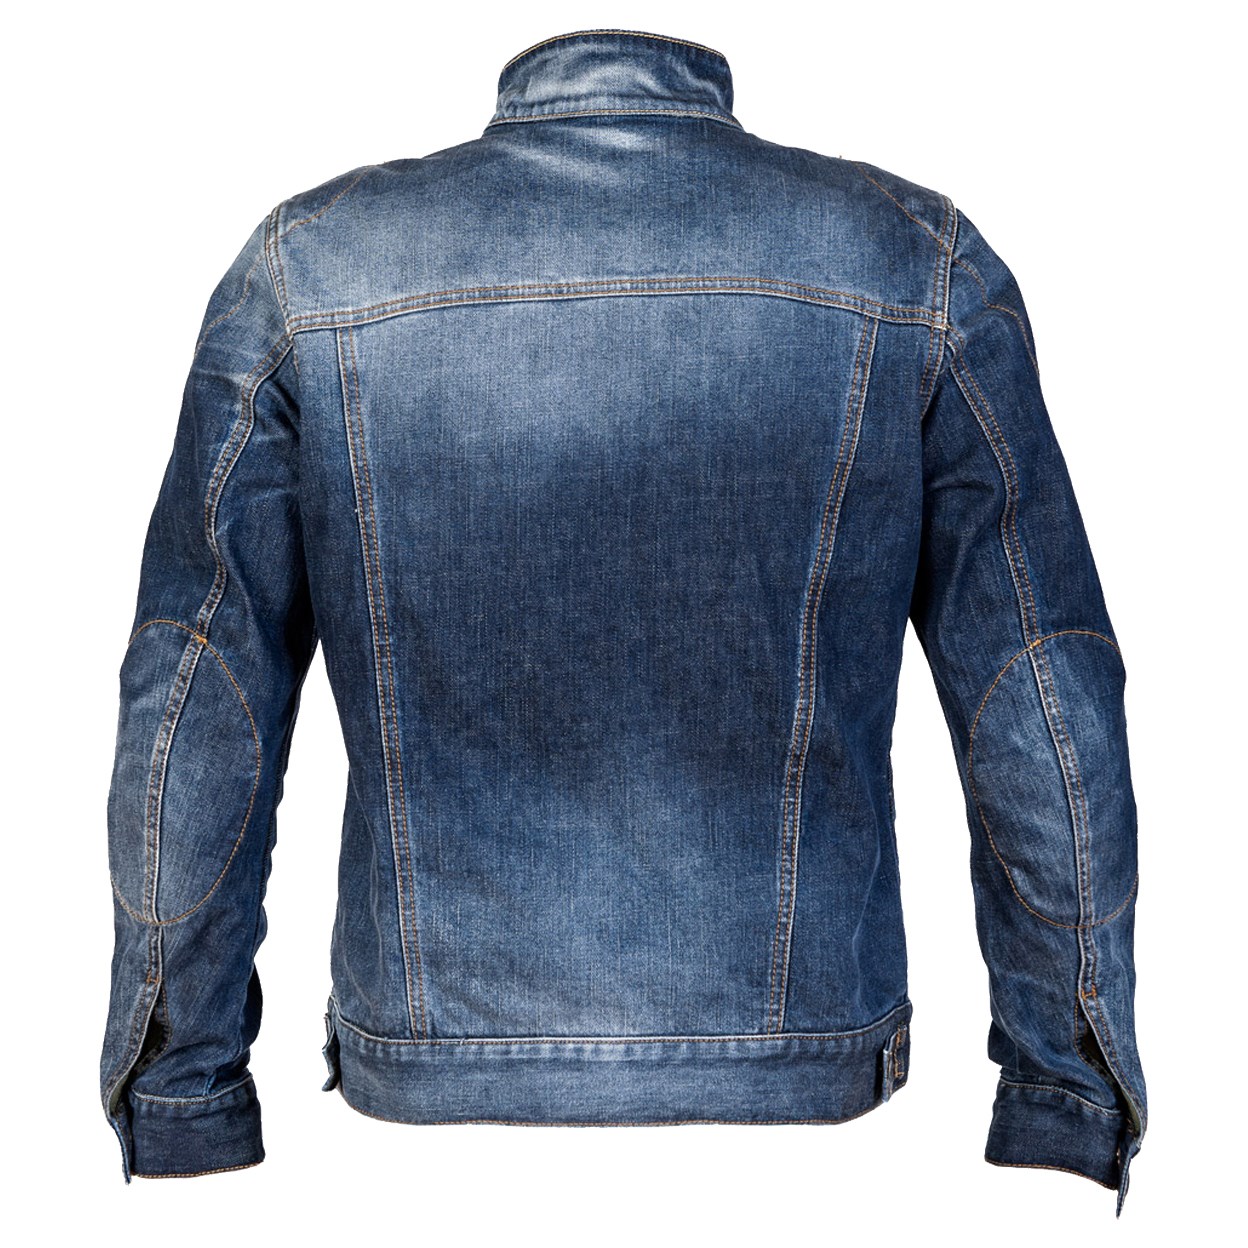 PMJ West denim motorcycle jacket